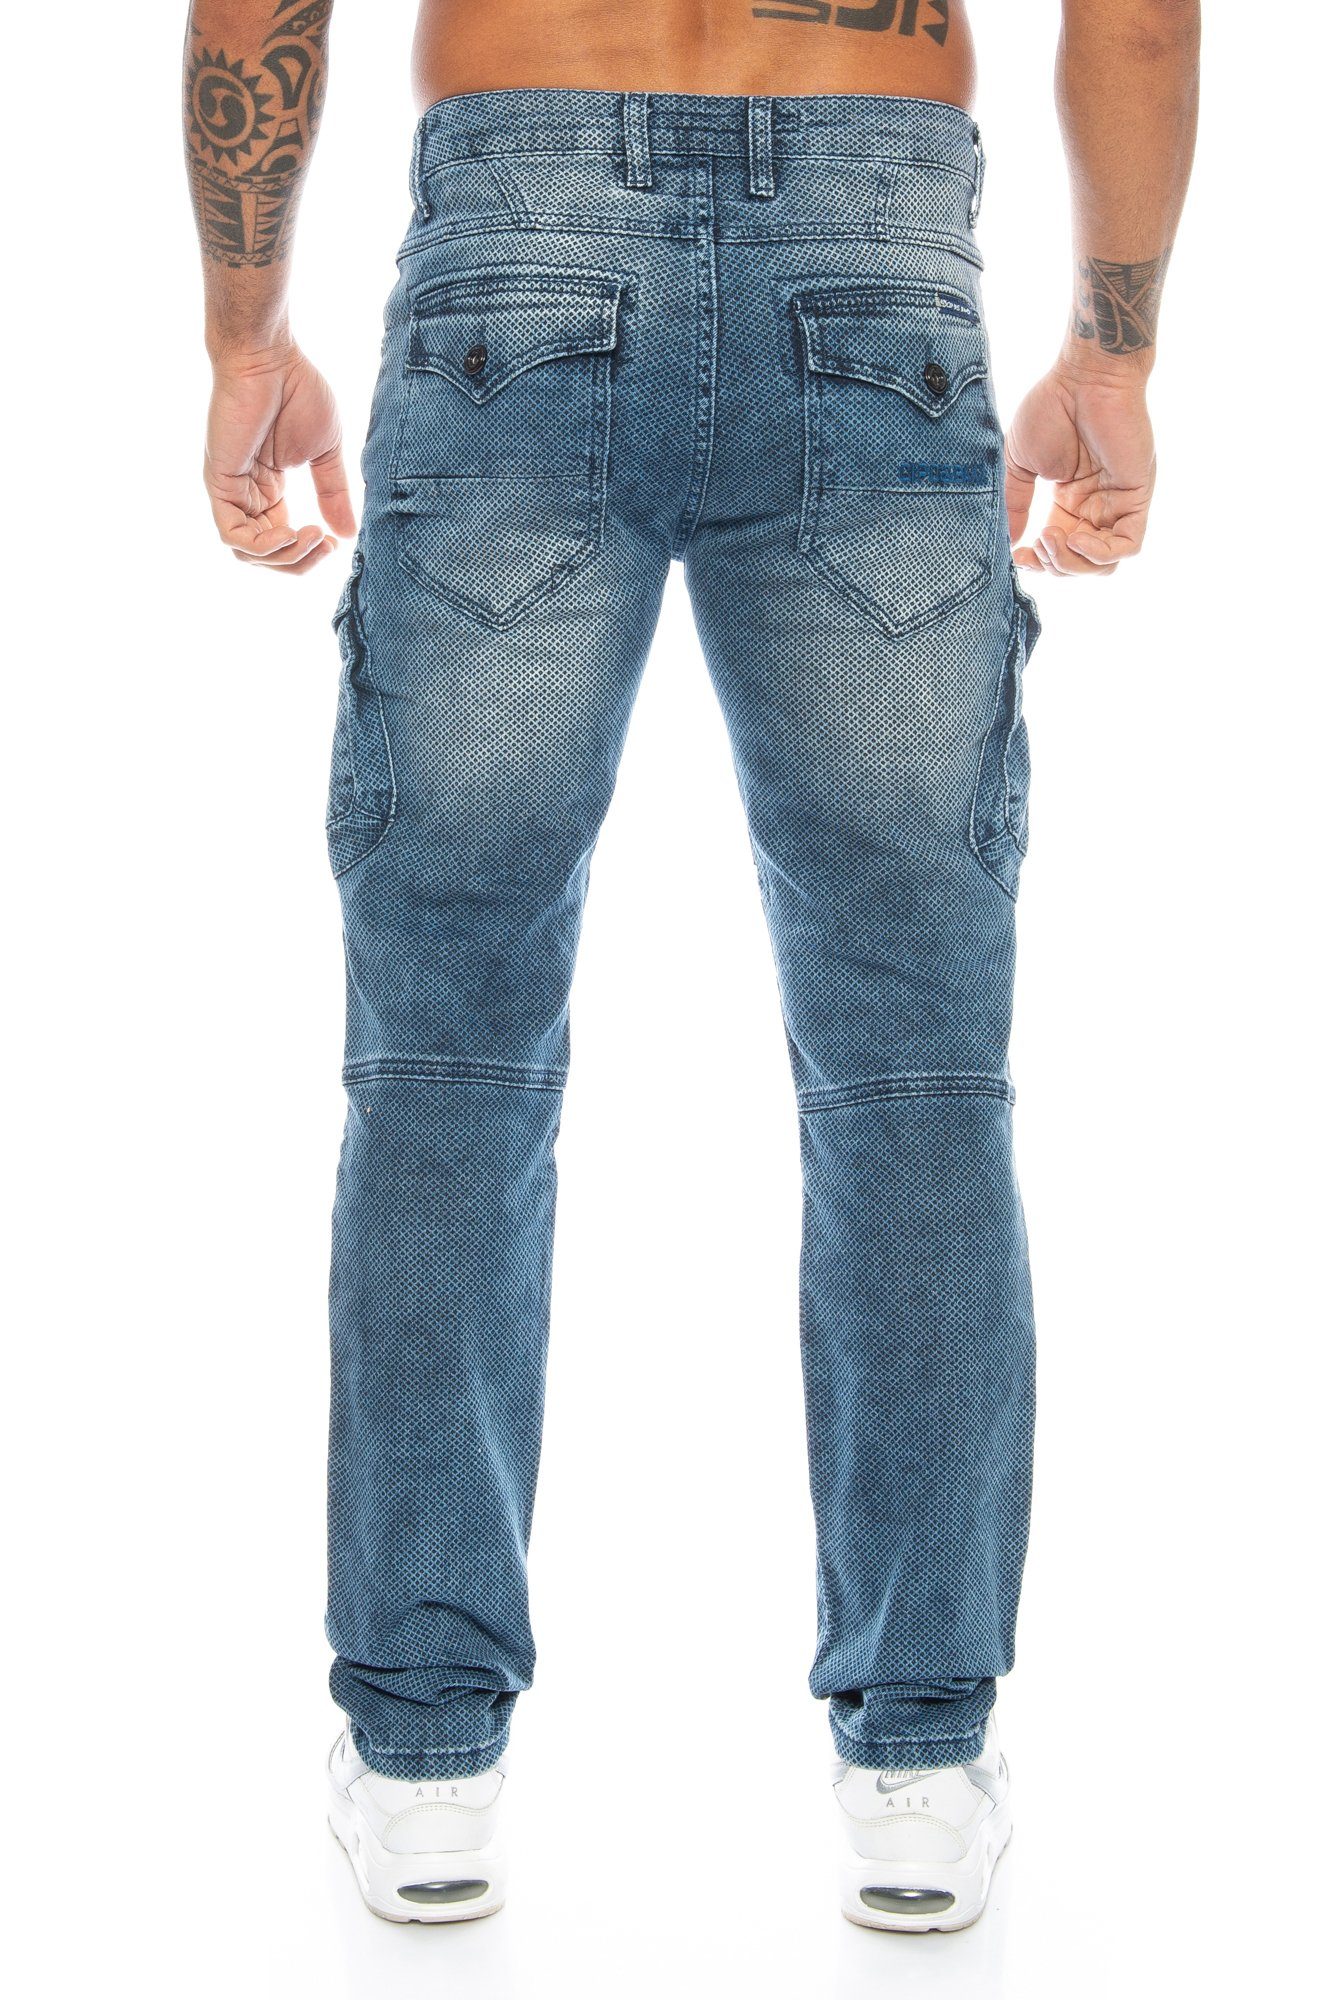 Cipo & Baxx Cargojeans Herren im Design Ausgefallenes weicher Cargo Cargo und stylischen blau Stoffmuster Jeans Tragekomfort Hose